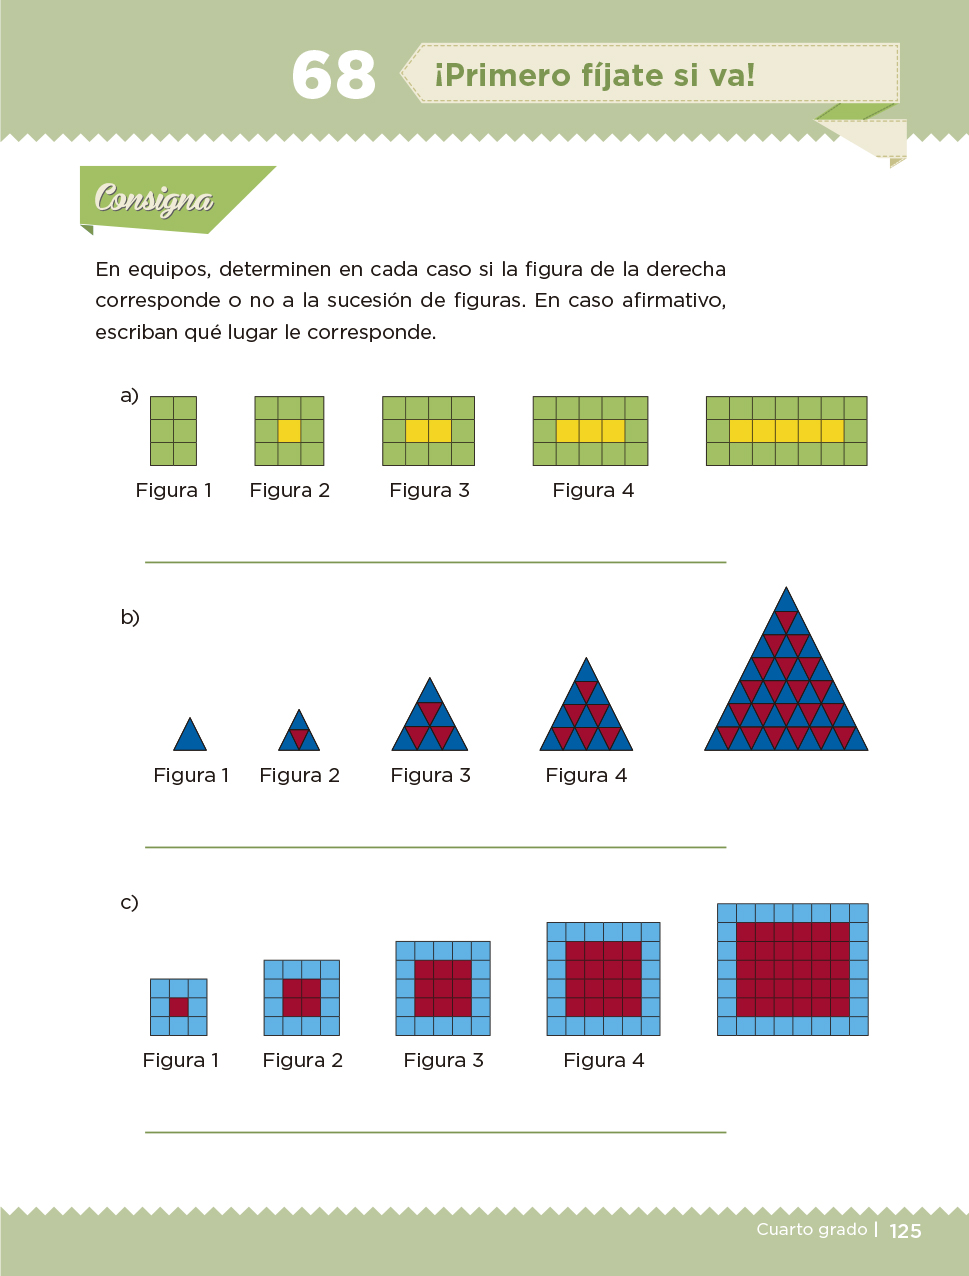 Desafíos Matemáticos Libro para el alumno Cuarto grado 2017-2018 - Página 125 - Libros de Texto ...